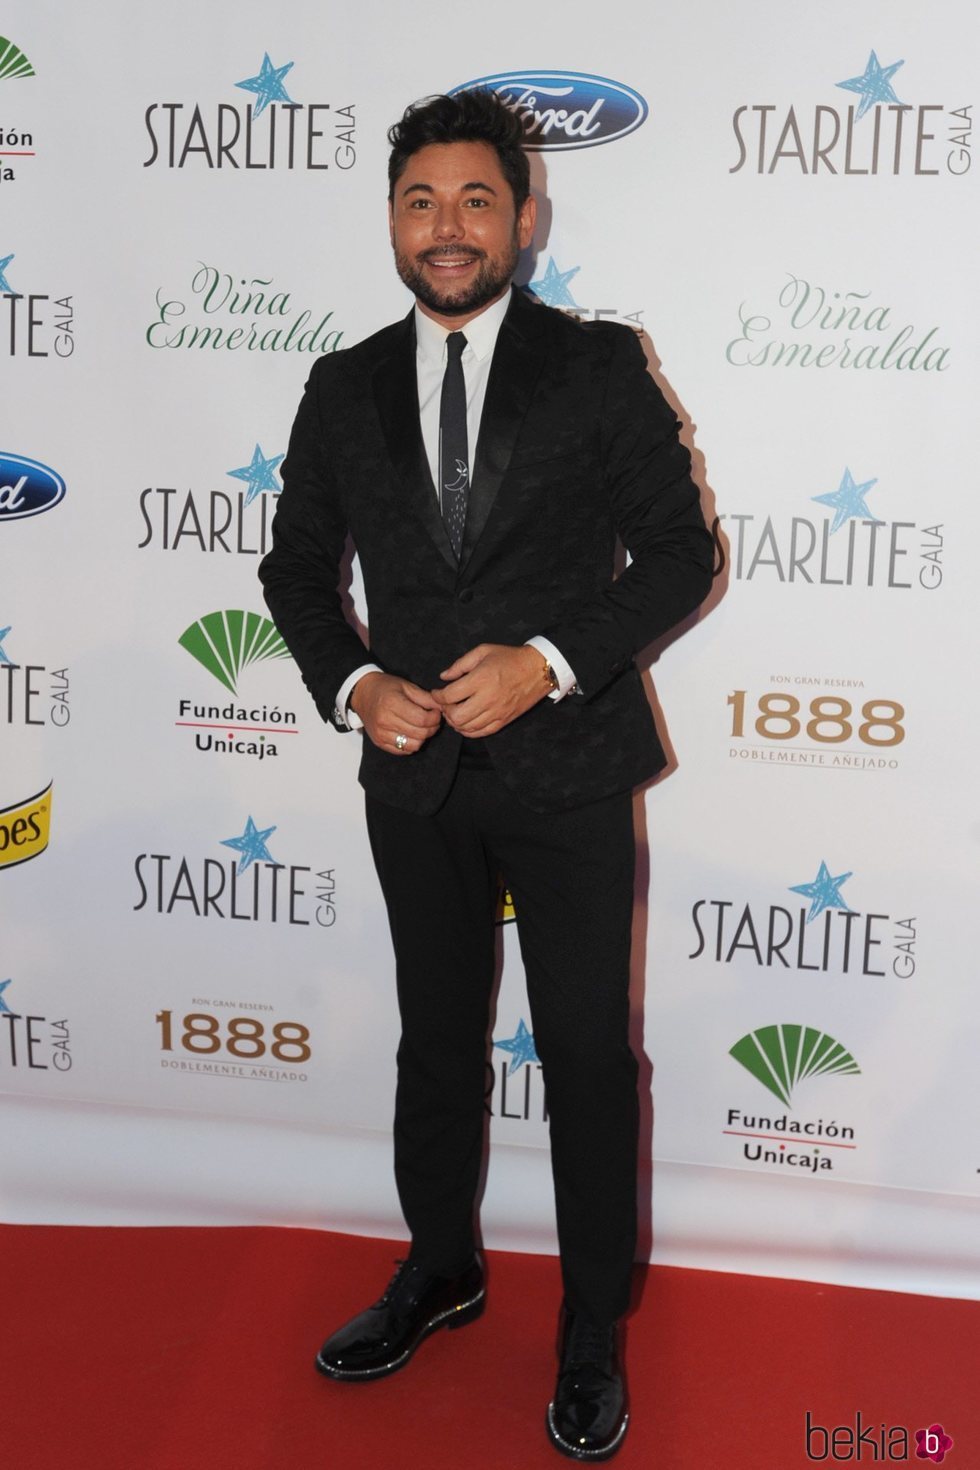 Miguel Poveda en la Gala Starlite de Marbella 2018